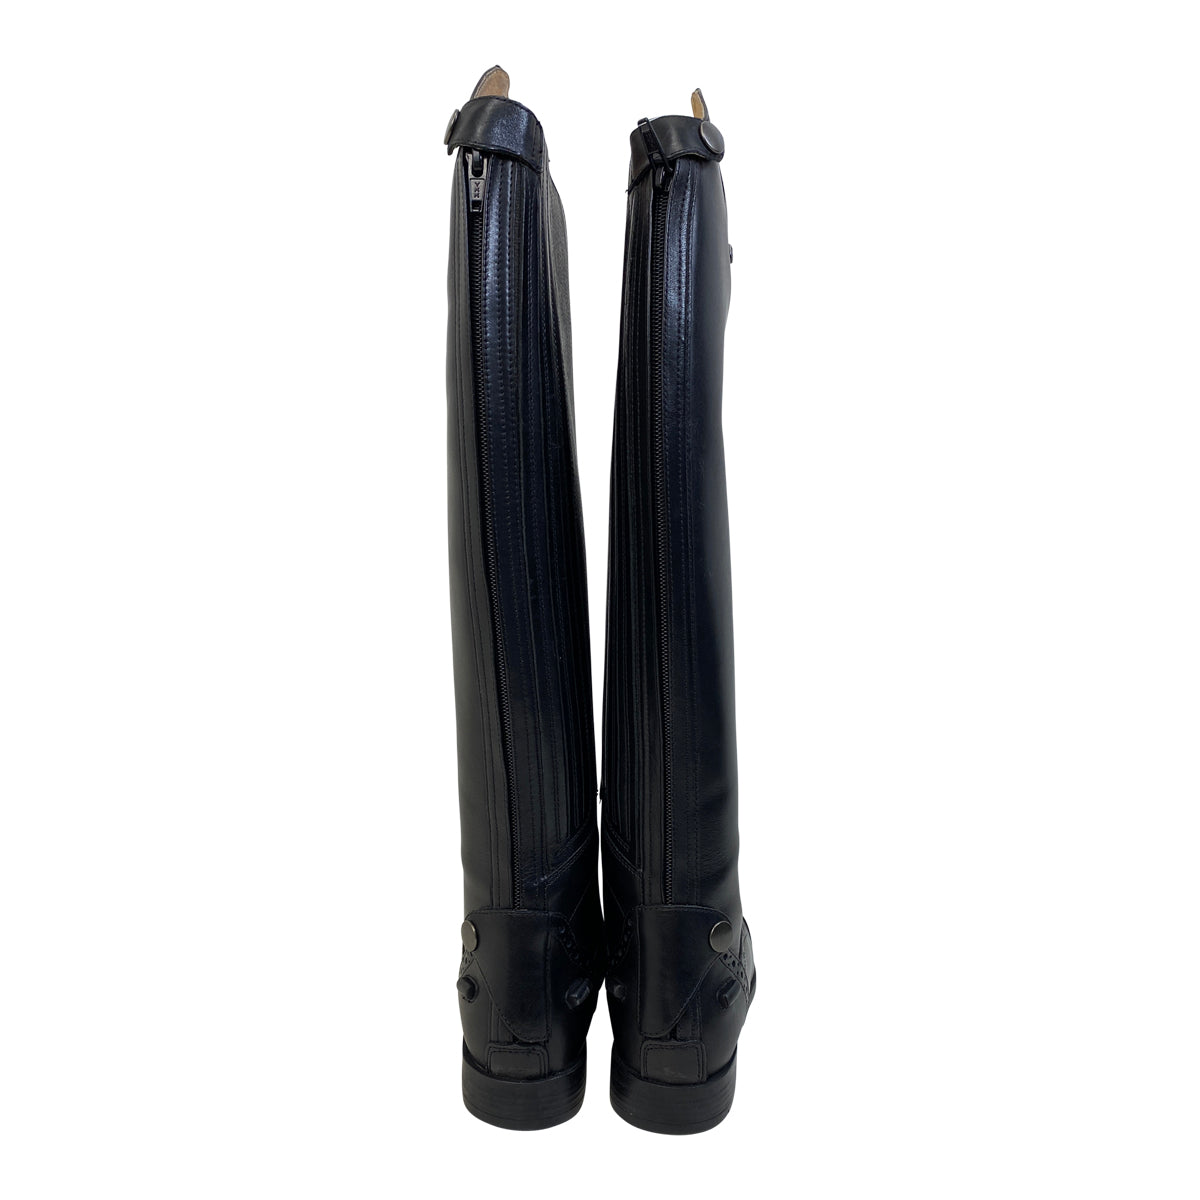 Horze 'Winslow' Field Boots in Black